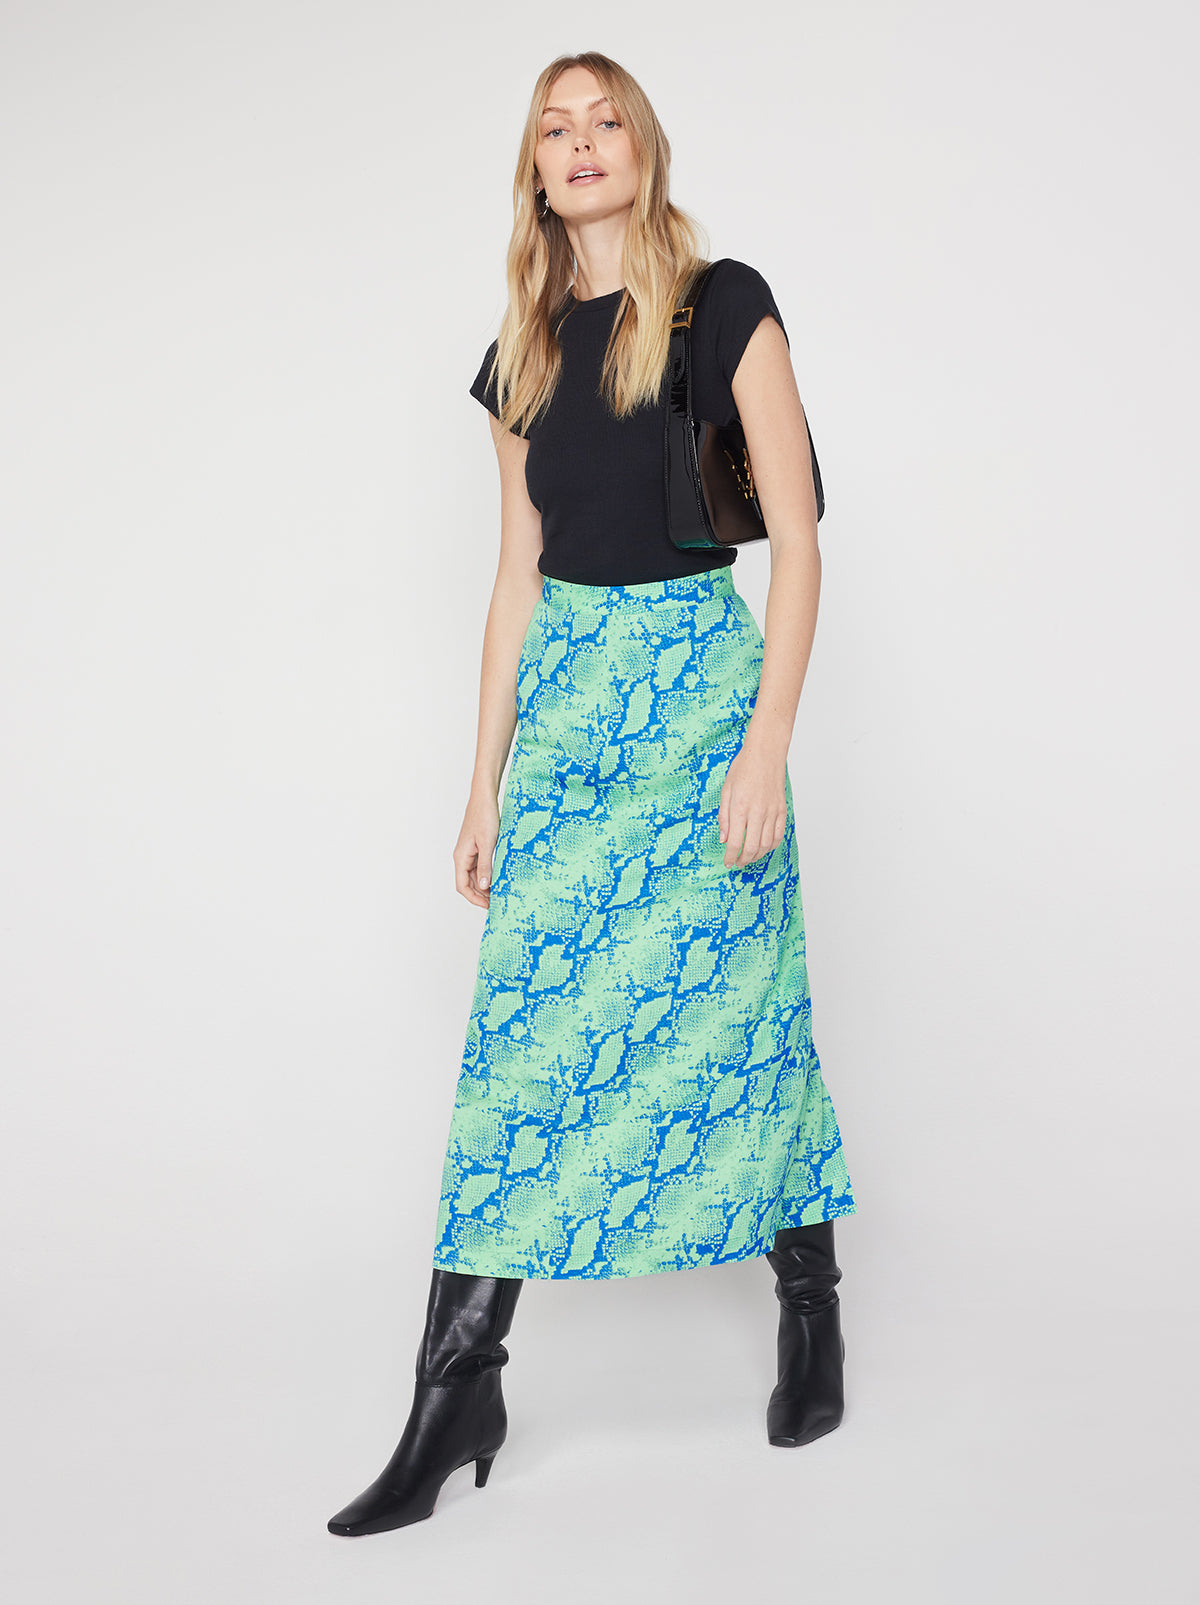 Laurel Blue Snake Print Skirt By KITRI Studio